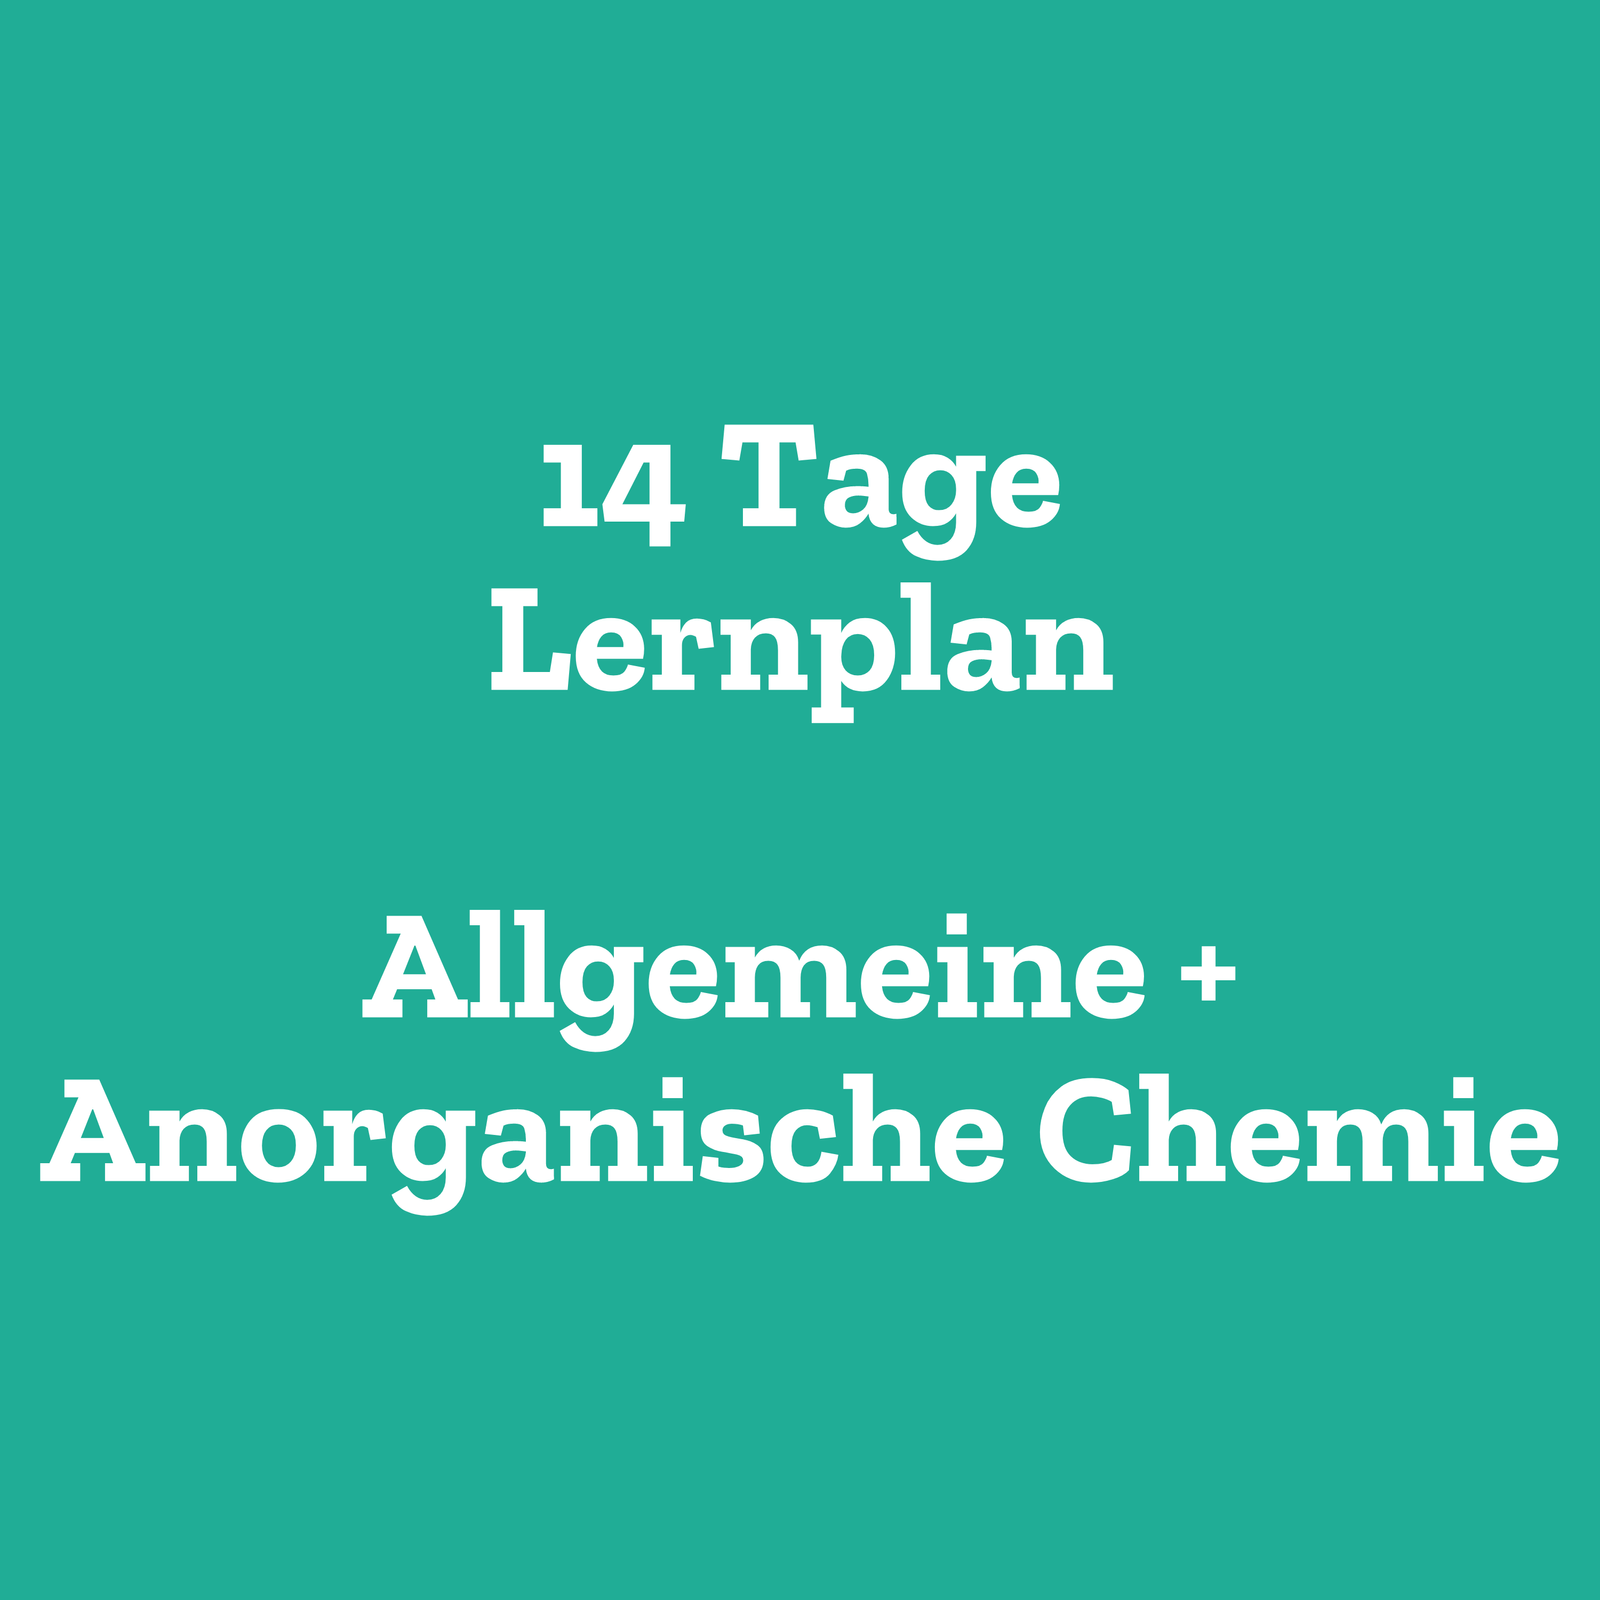 14 Tage Lernplan Anorganische + Allgemeine Chemie